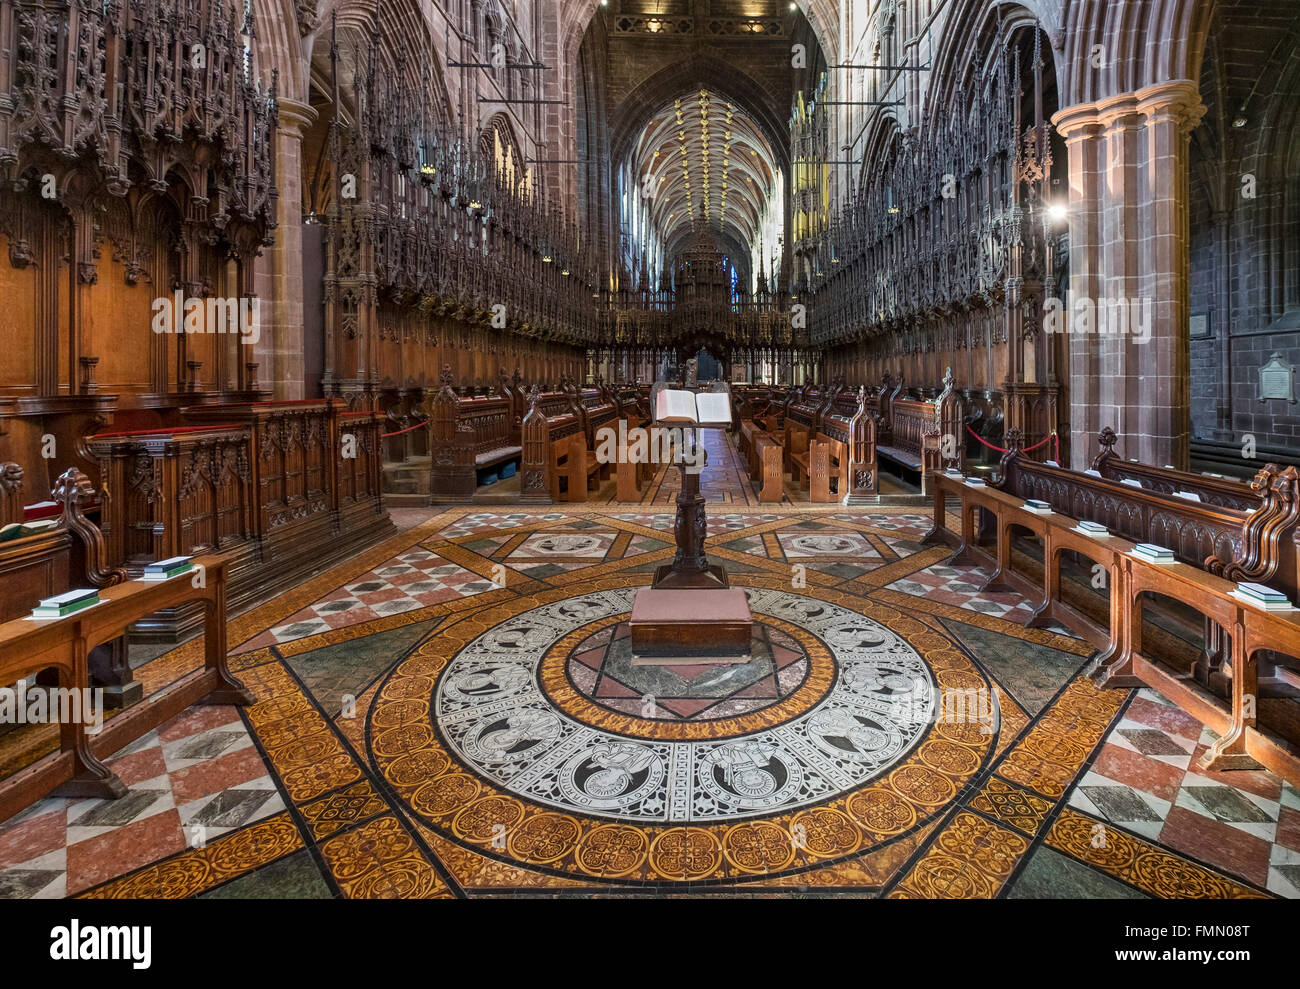 La ornamentada sillería del coro de la Catedral de Chester, Chester, Cheshire, Inglaterra, Reino Unido. Foto de stock